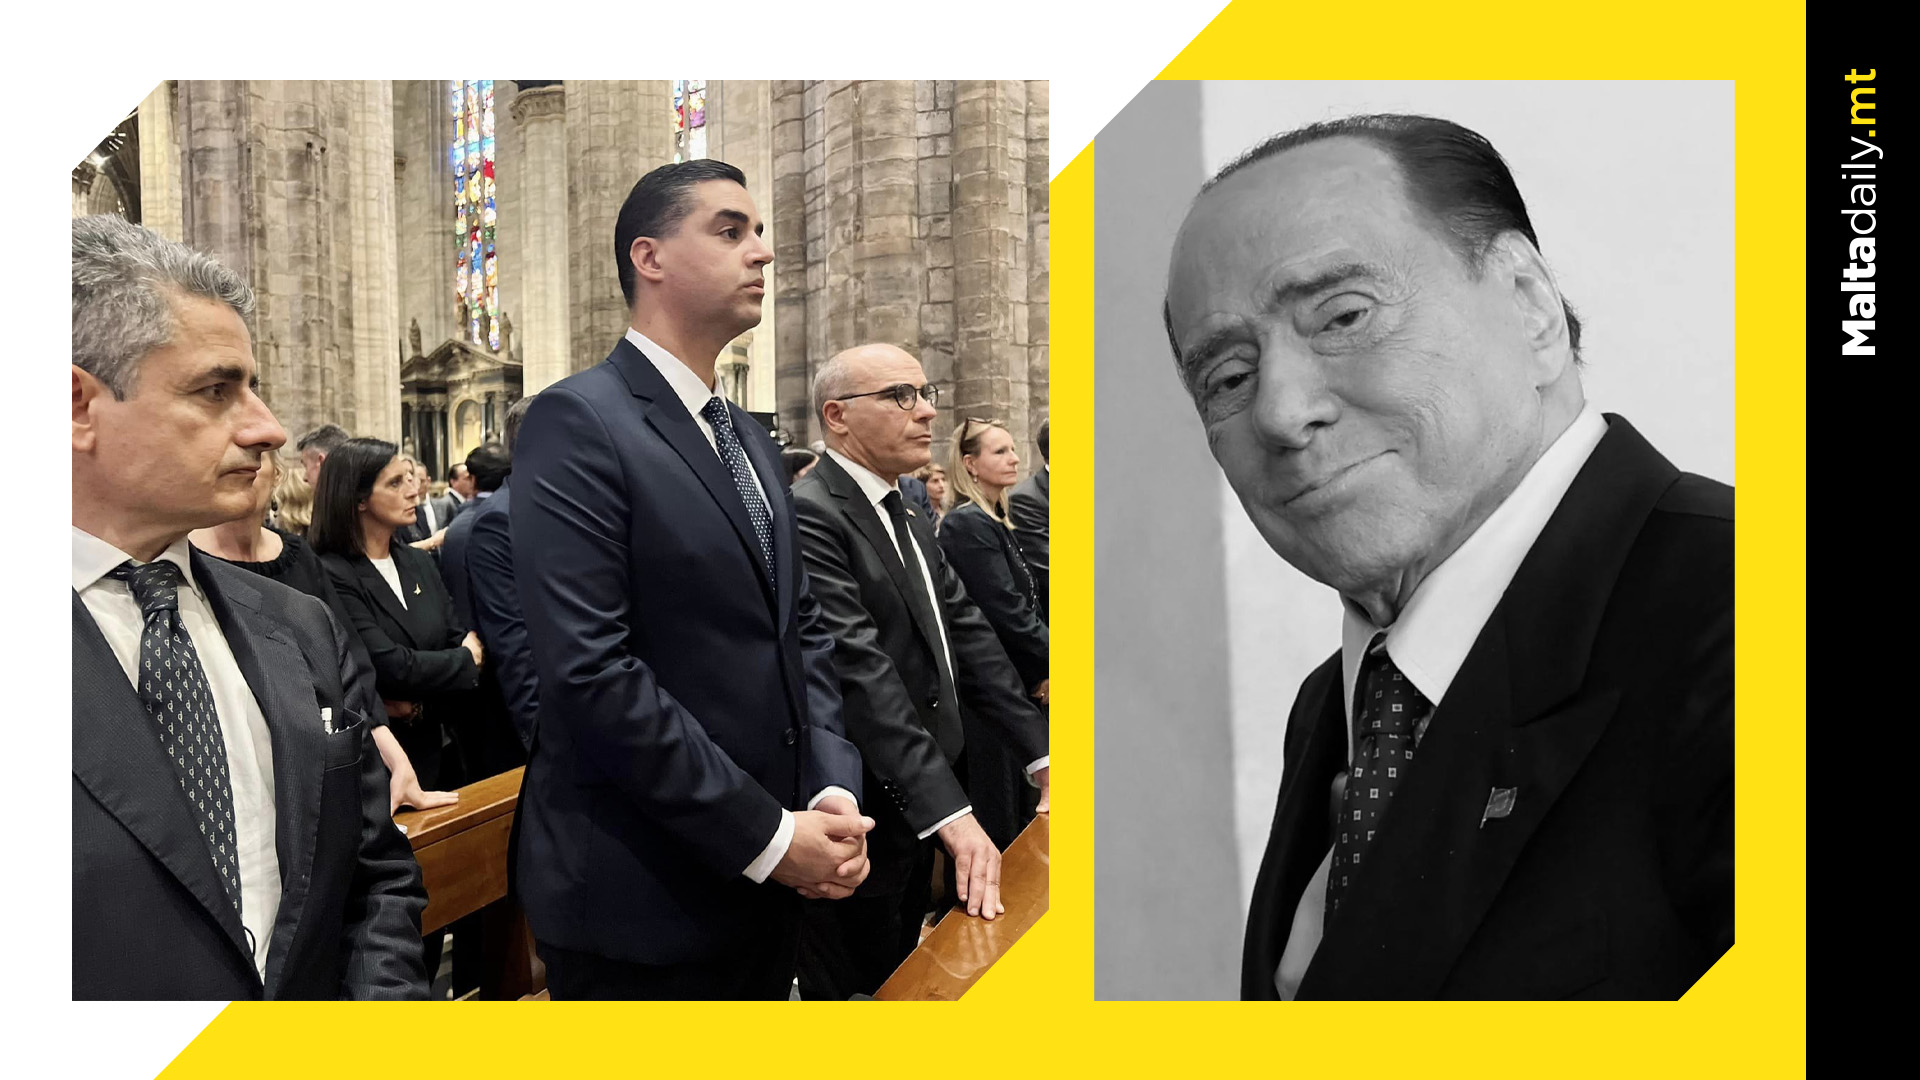 Maltese minister Ian Borg attends Silvio Berlusconi's funeral in Milan